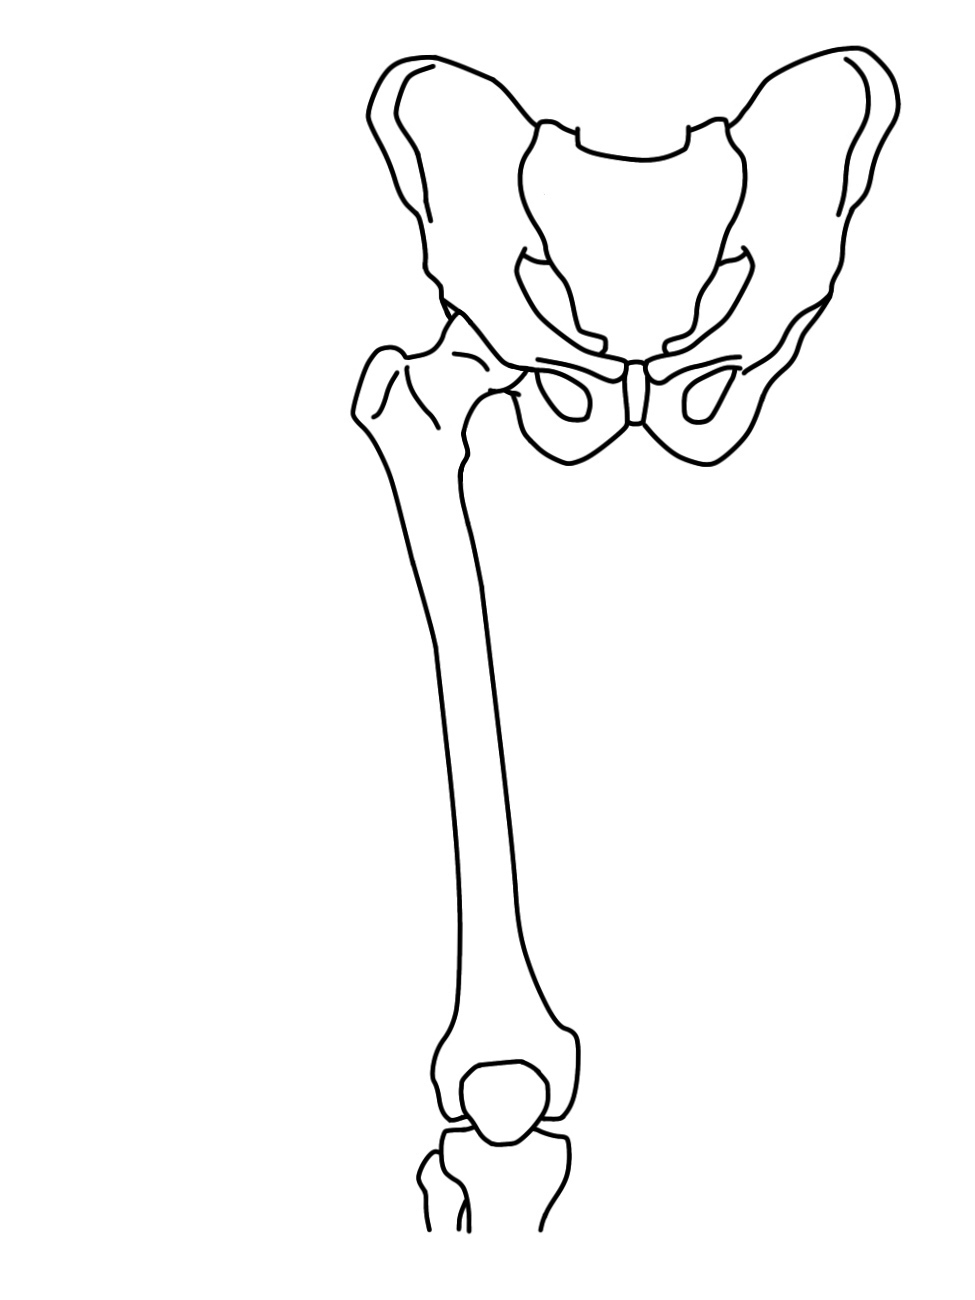 骨盤帯・大腿